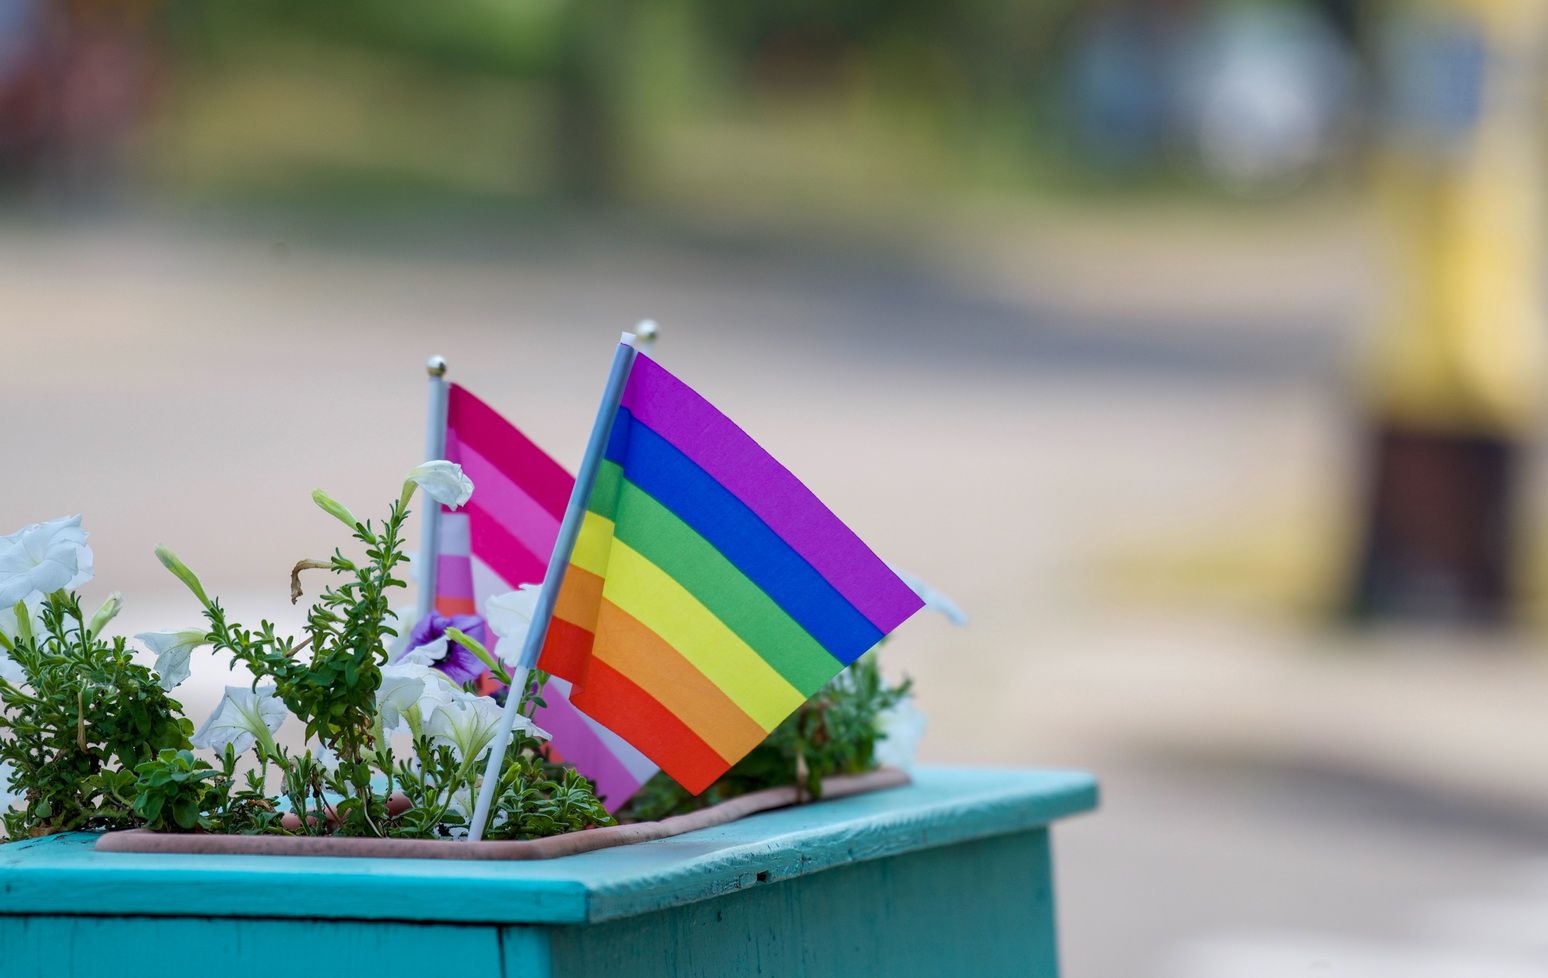 Совместное заявление правозащитных и ЛГБТ-организаций и инициатив относительно активностей, направленных на дискриминацию ЛГБТ в Беларуси